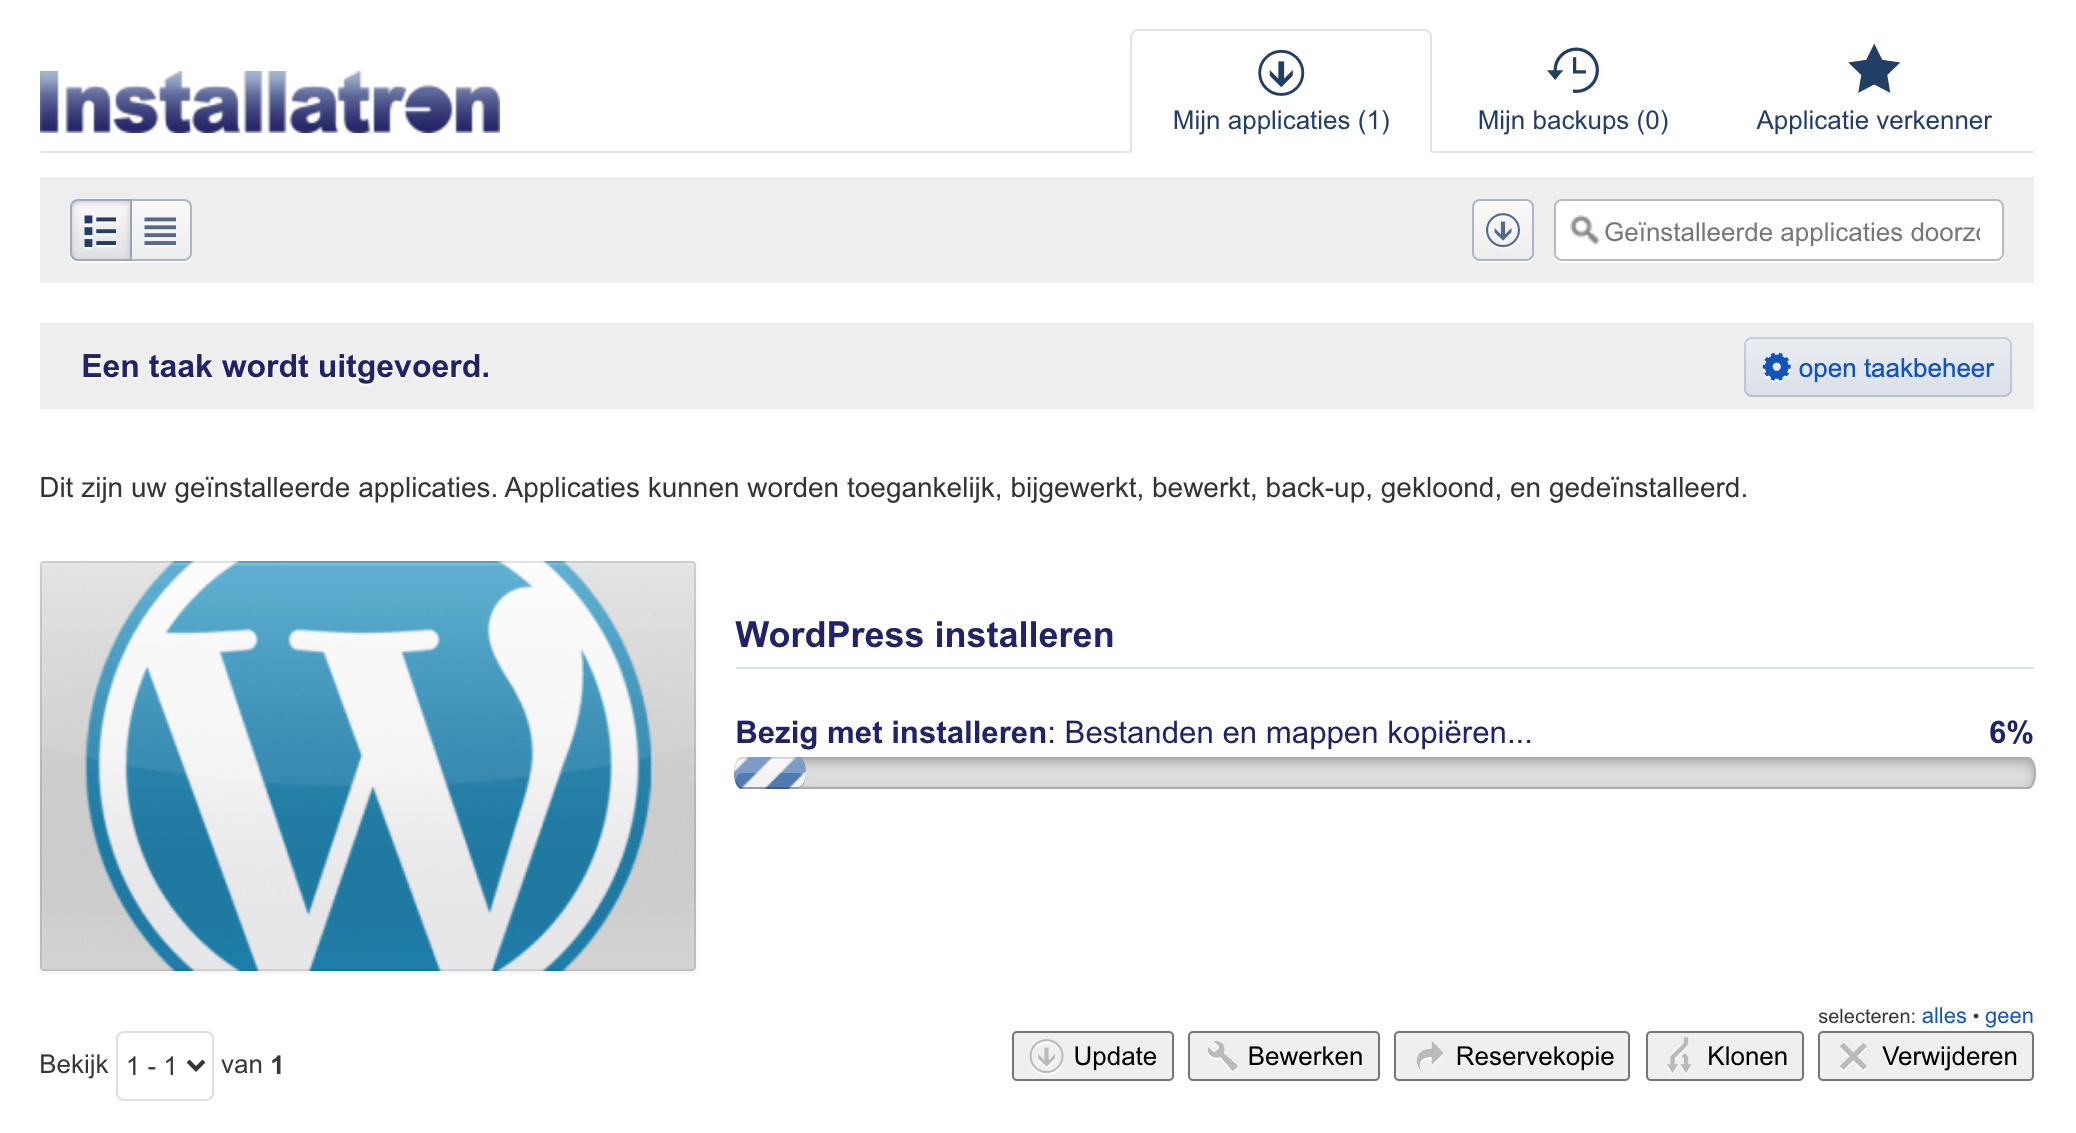 Venster die het installeren van WordPress weergeeft